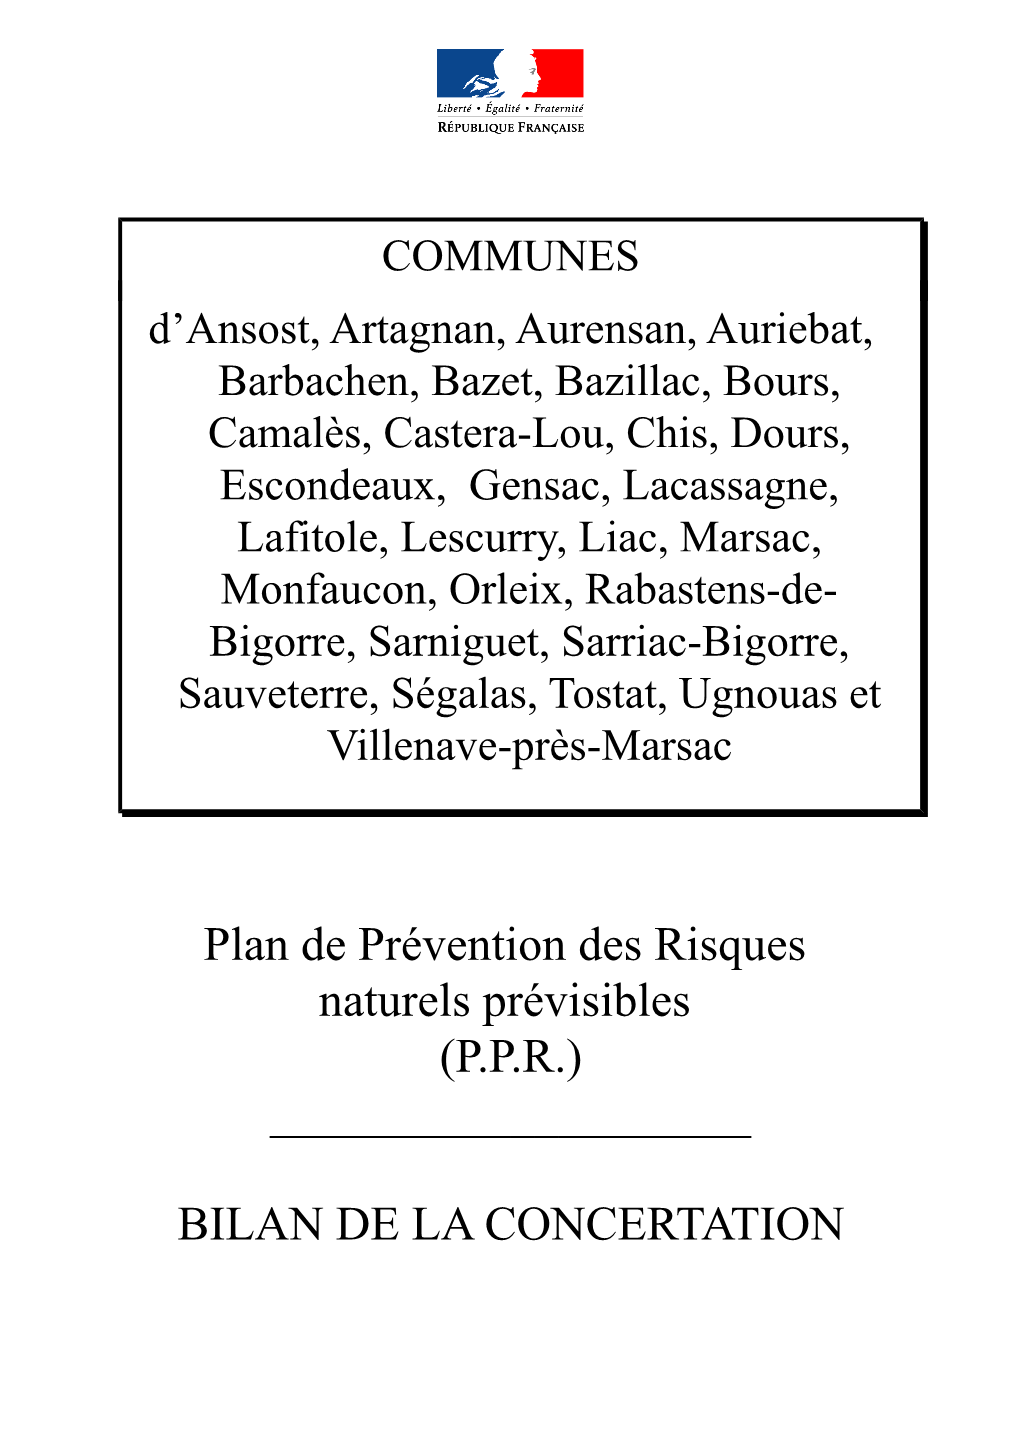 Plan De Prévention Des Risques Naturels Prévisibles (P.P.R.) ______